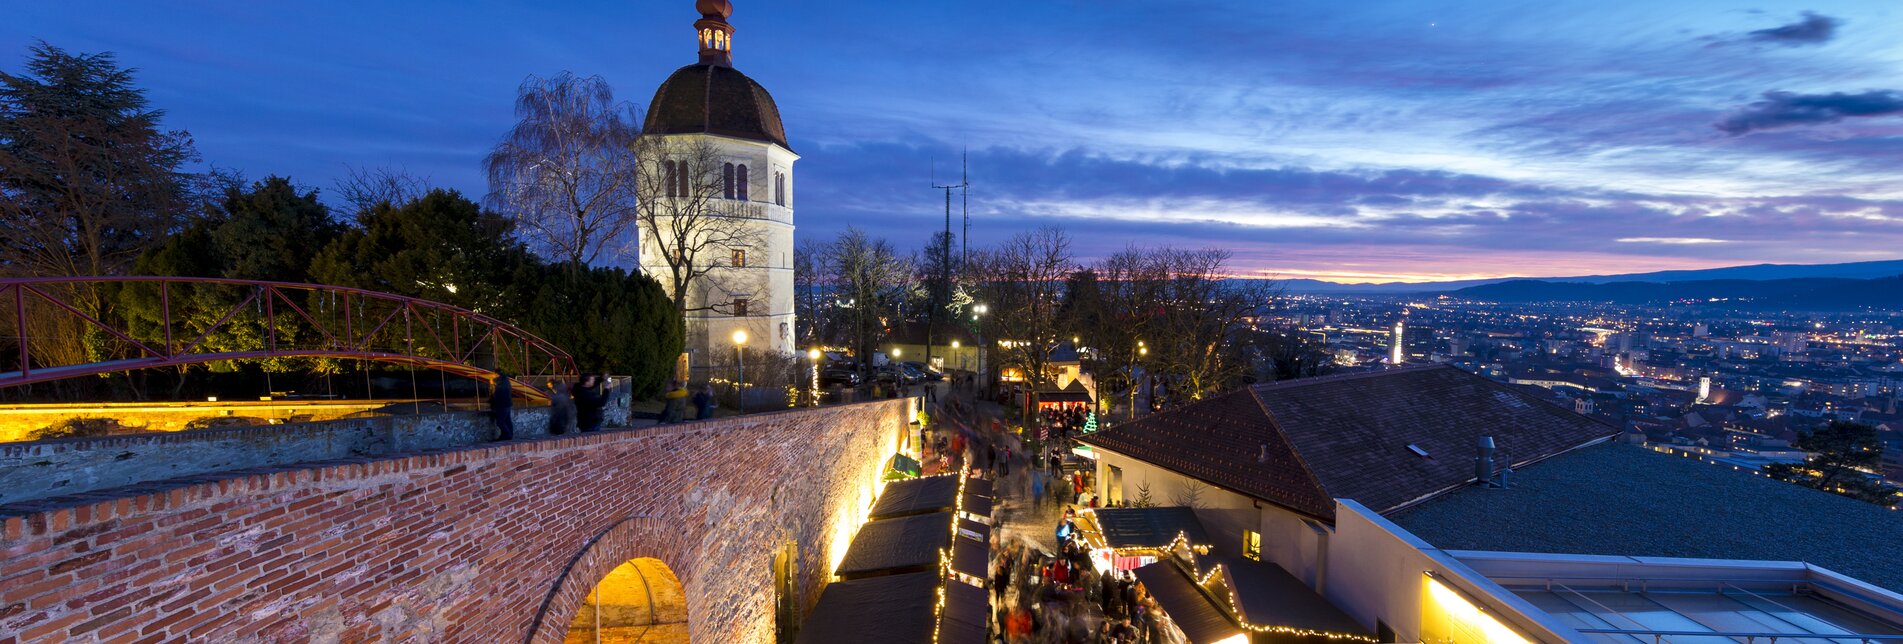 Graz im Advent, Aufsteirern am Schlossberg (Kasematten, Glockenturm) | © Steiermark Tourismus | Harry Schiffer